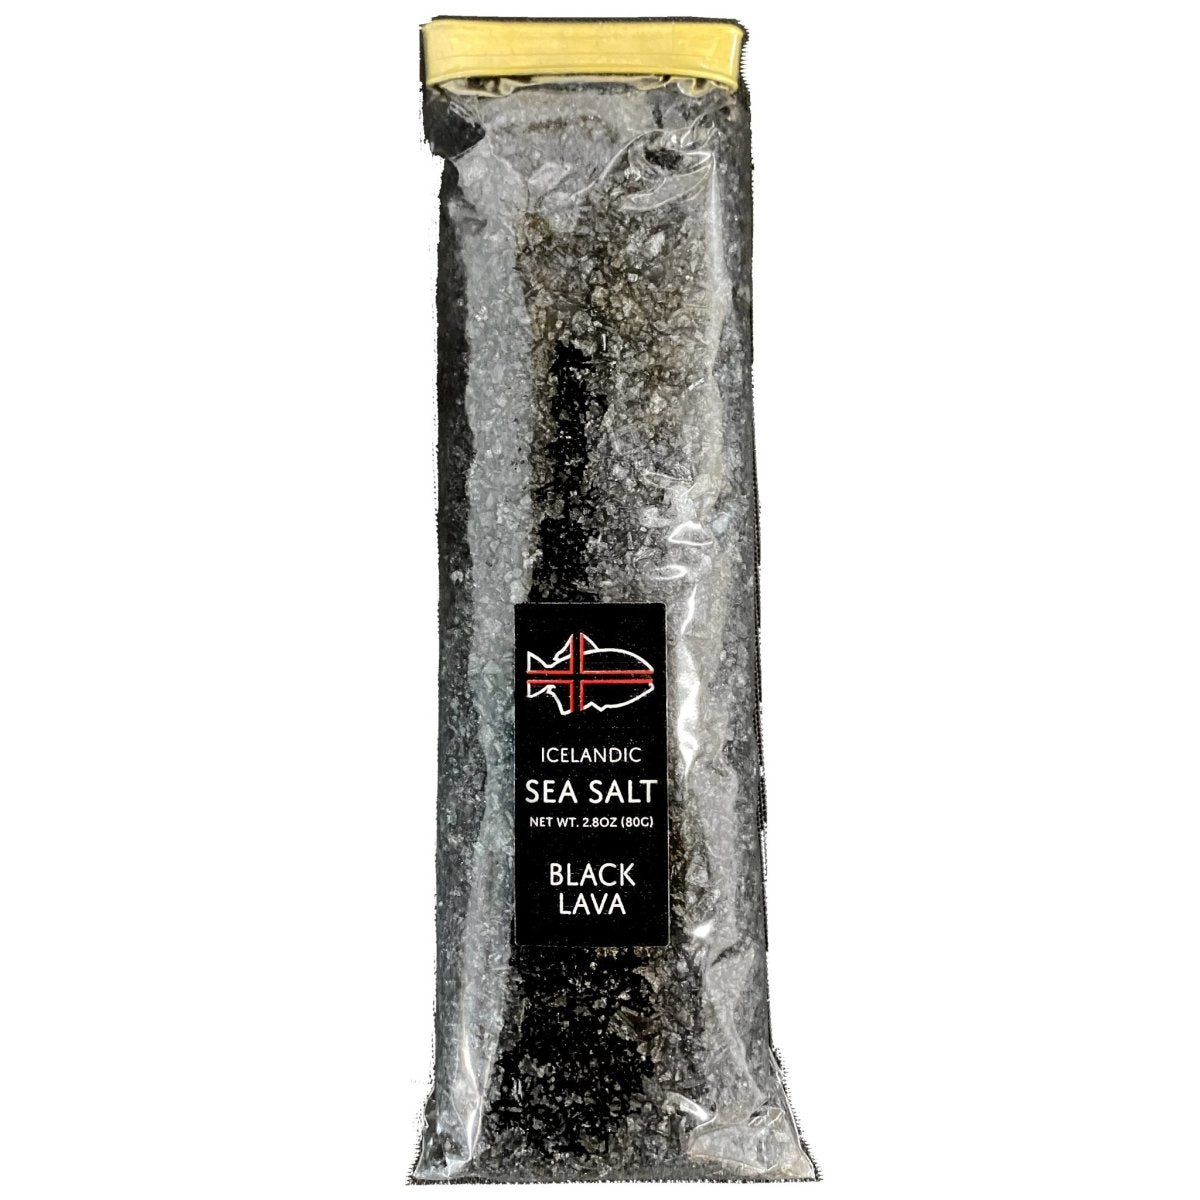 Black Lava - Icelandic Sea Salt - Nordic Catch